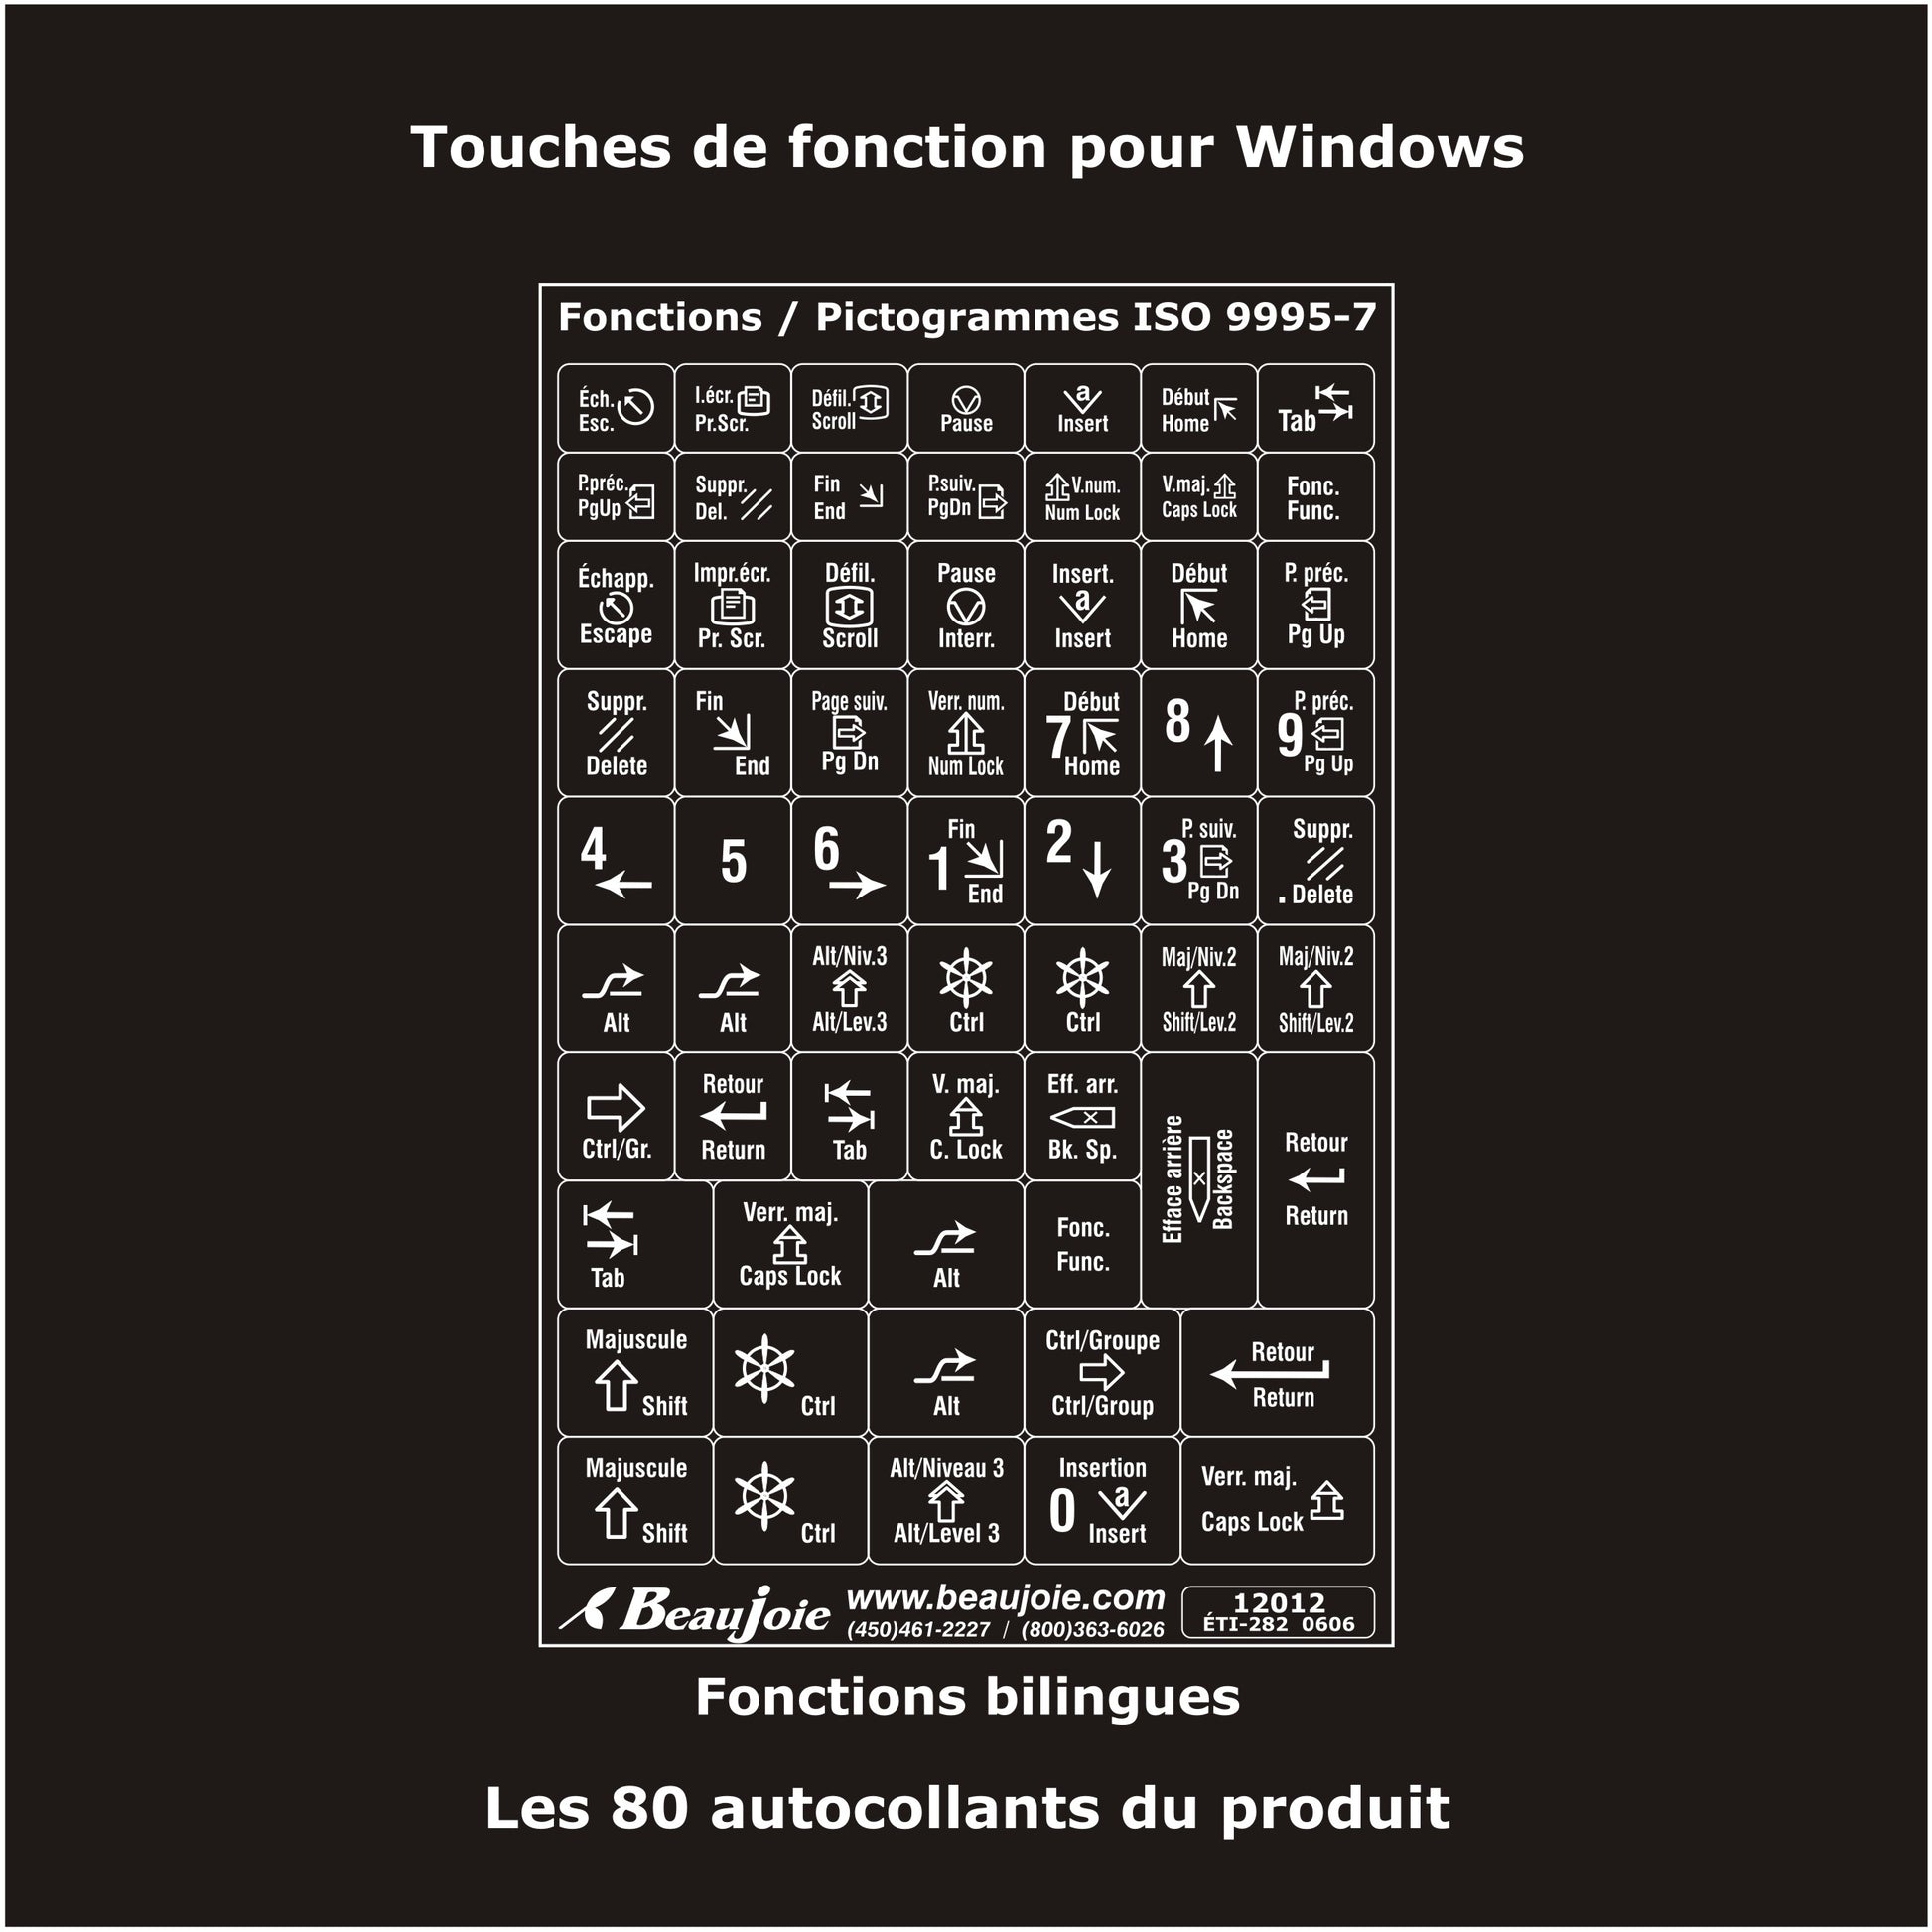 Autocollants Clavier Windows Français (Canada) - Blanc sur Noir